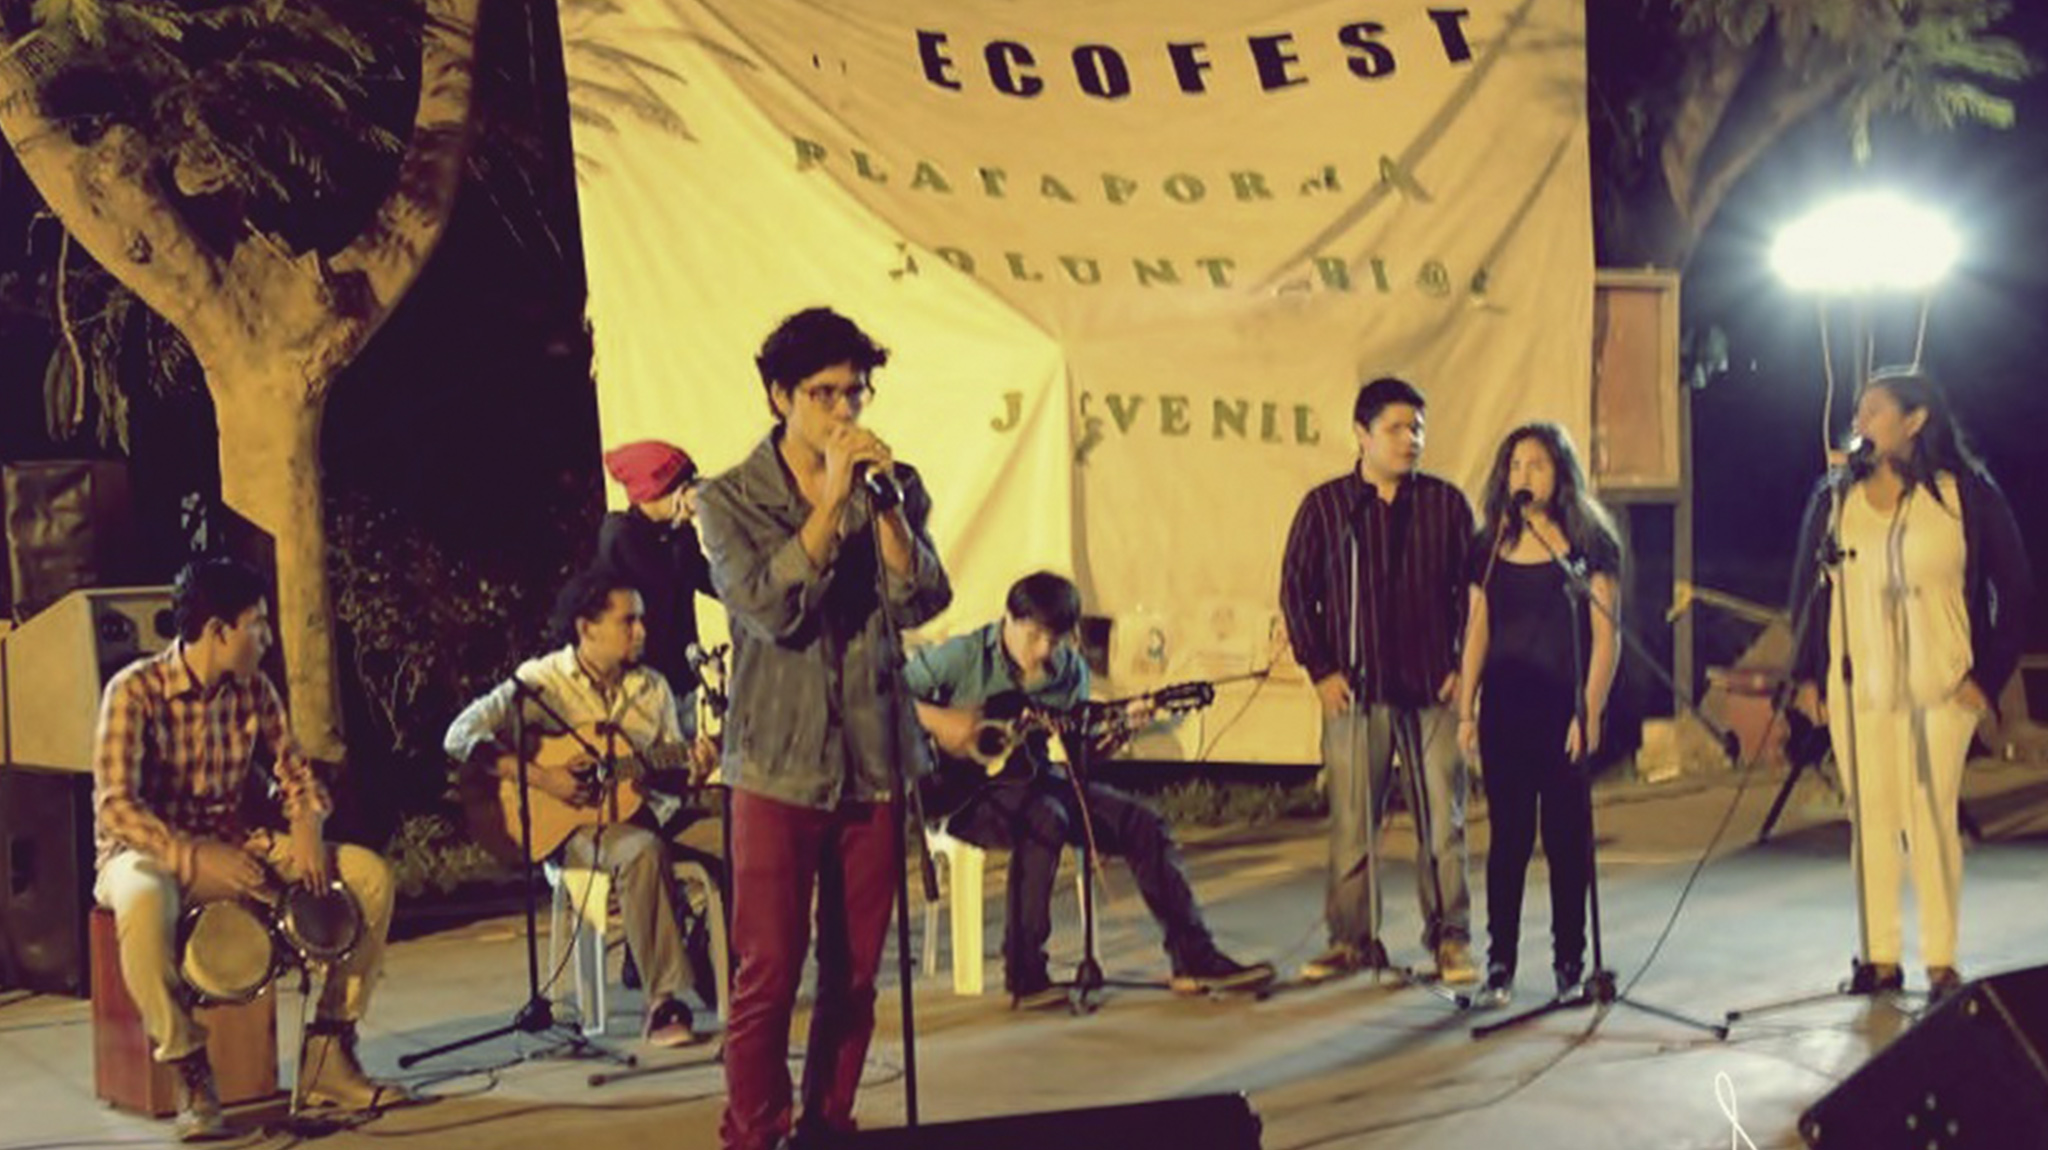 Sonetto Ecofest